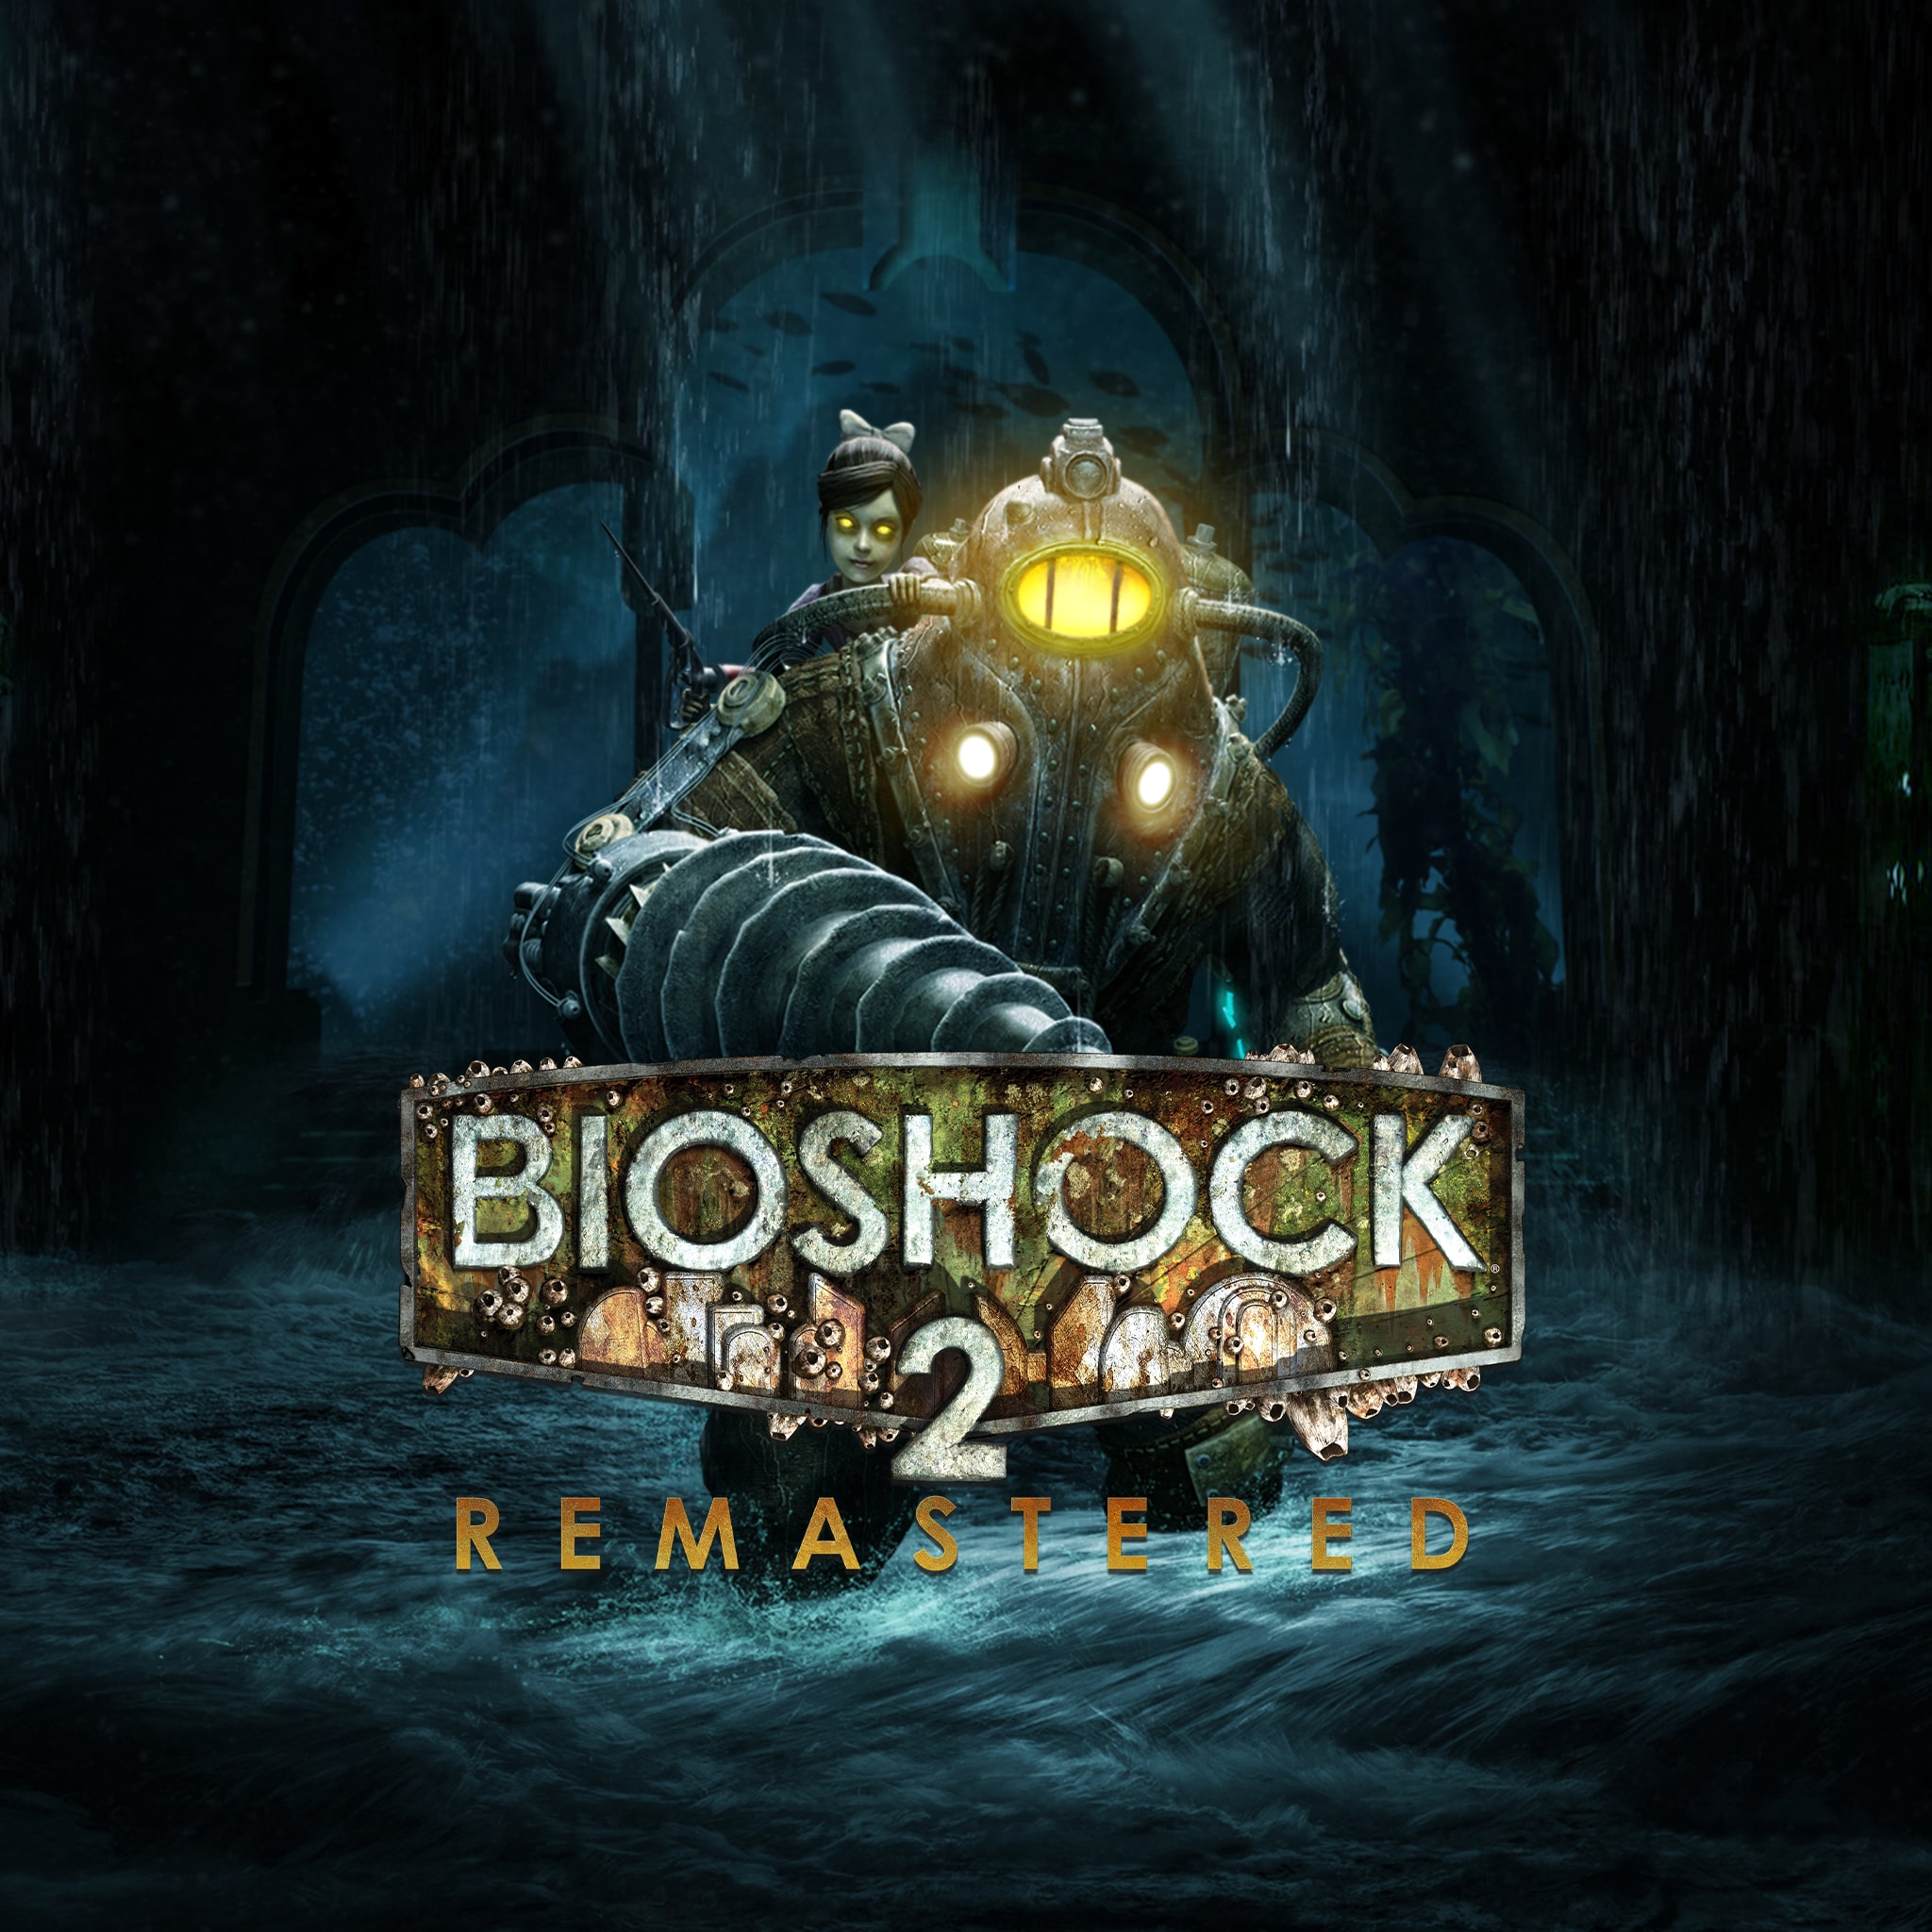 bioshock 2 remastered trainer